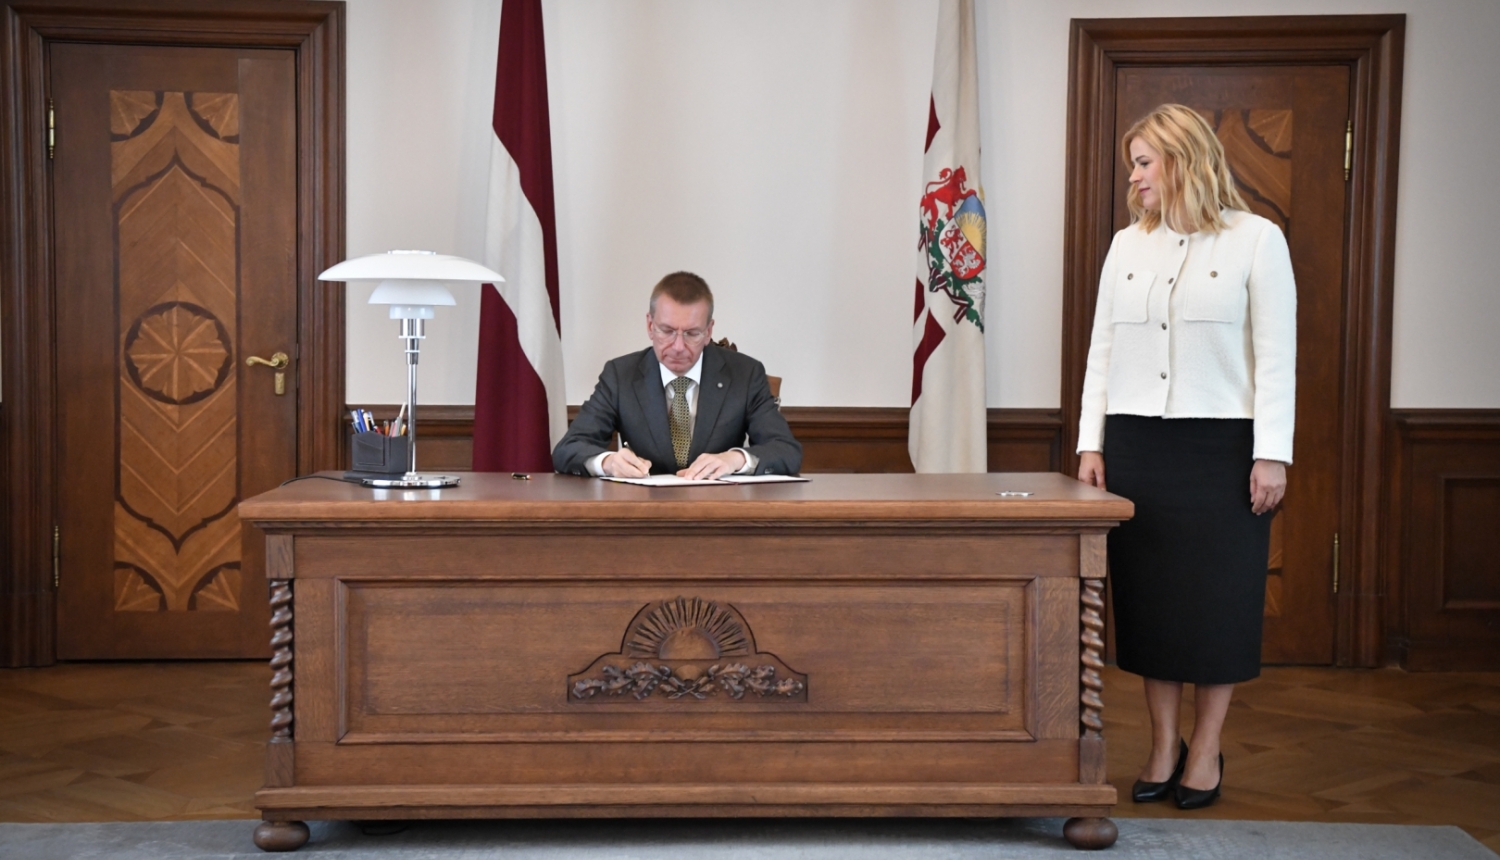 24.08.2023. Valsts prezidents Edgars Rinkēvičs paraksta rīkojumu, kurā aicina Eviku Siliņu sastādīt Ministru kabinetu. Pie galda pa labi stāv Evika Siliņa.